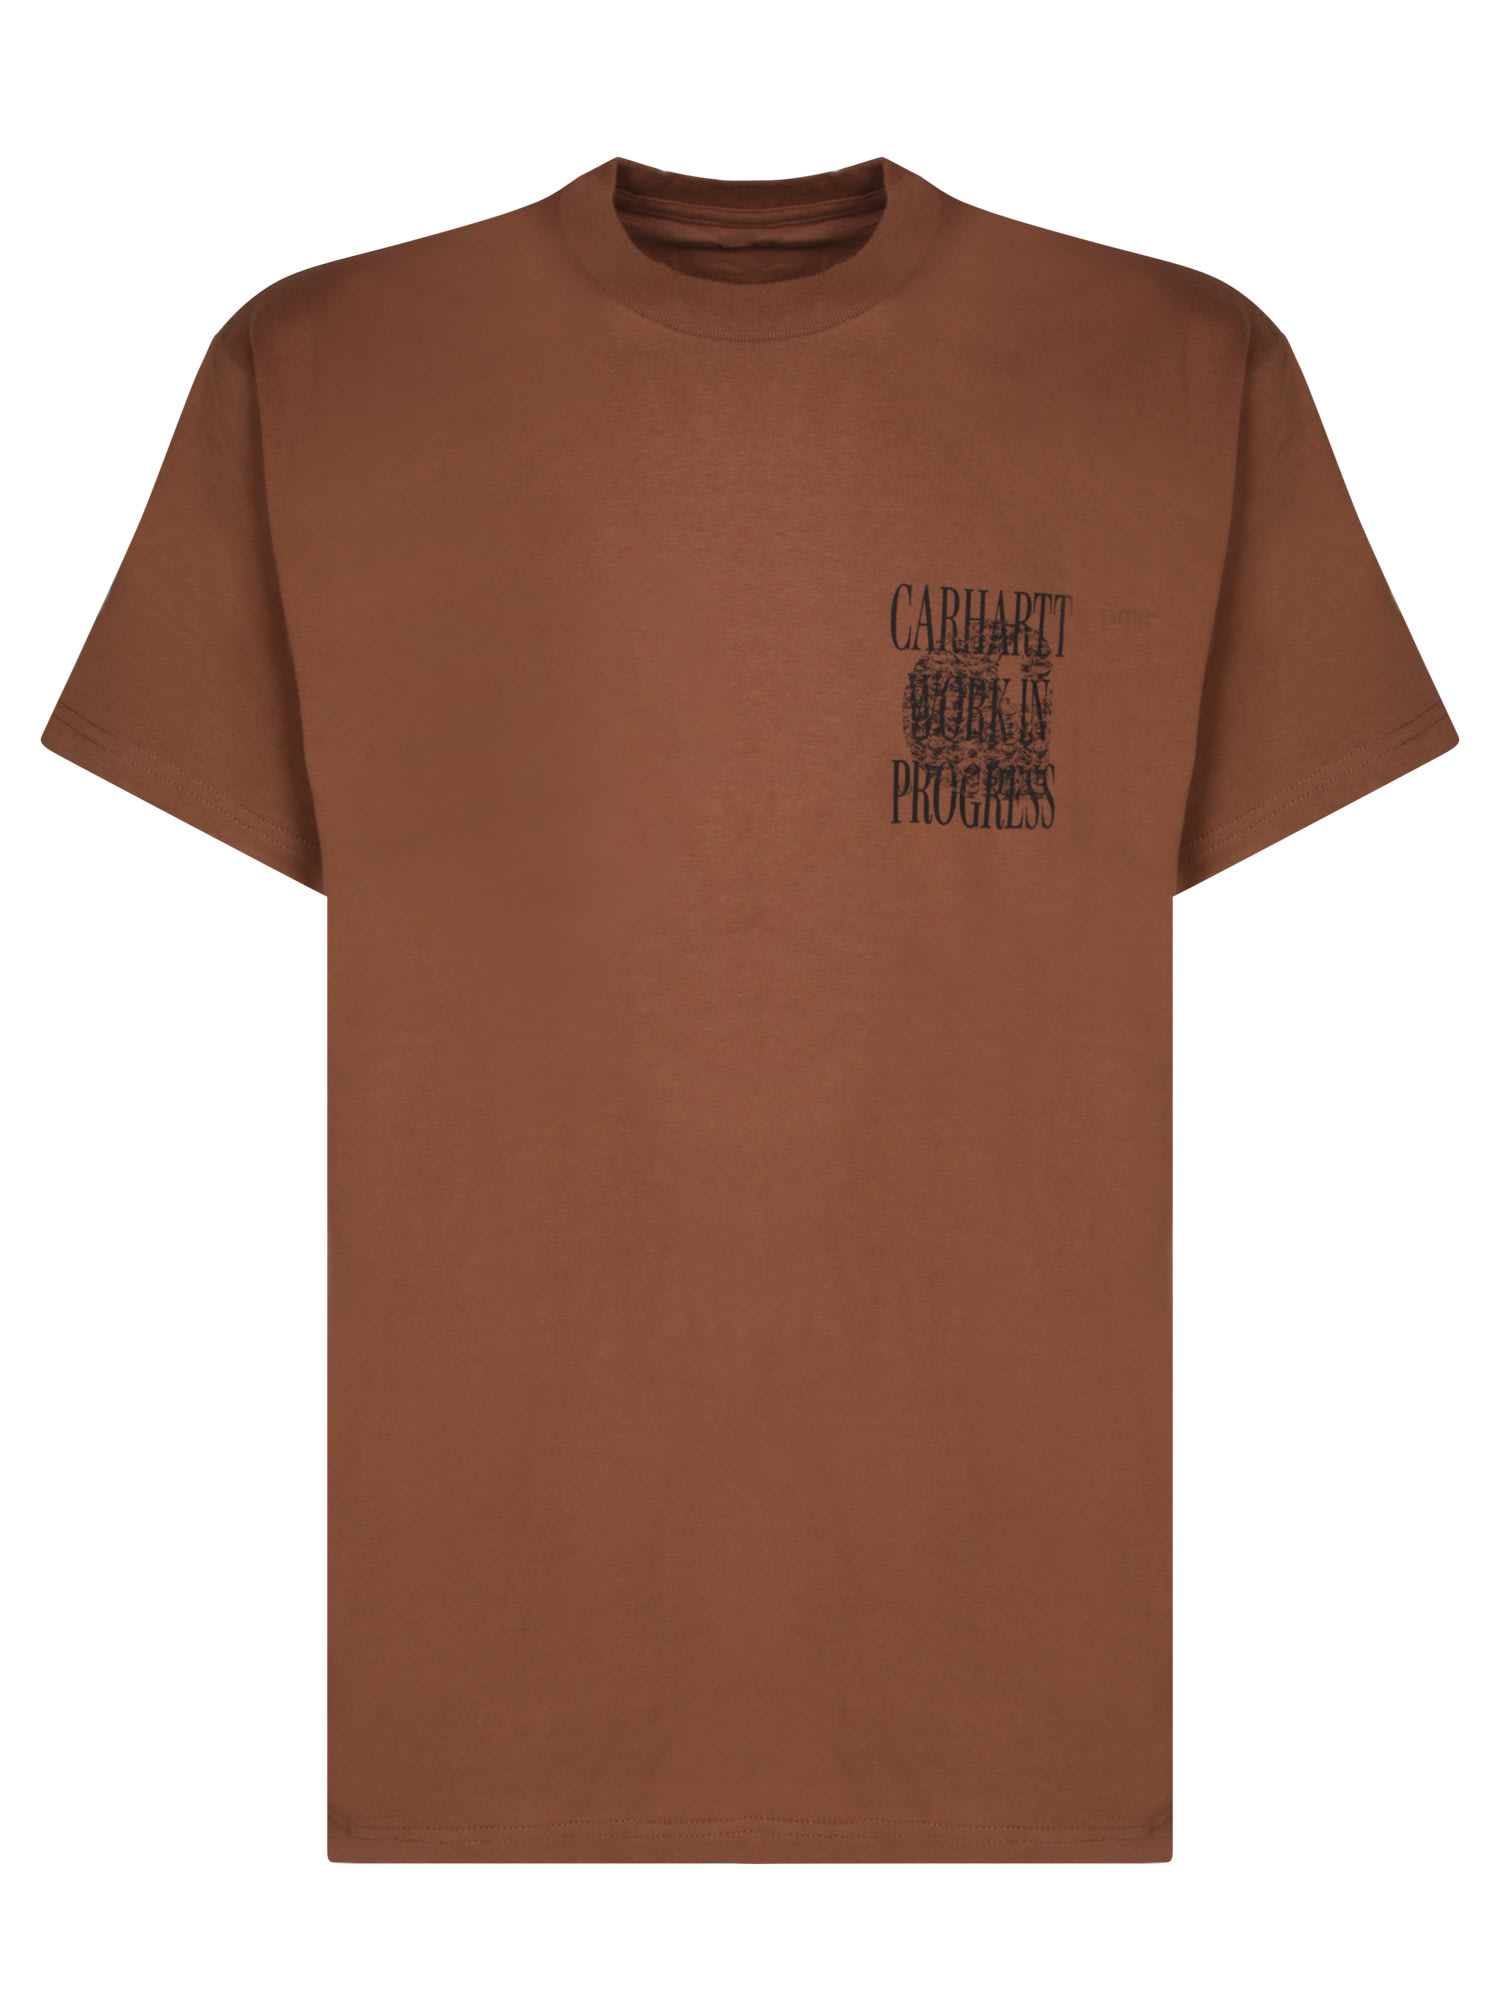 Carhartt Always A Wip Brown T-shirt